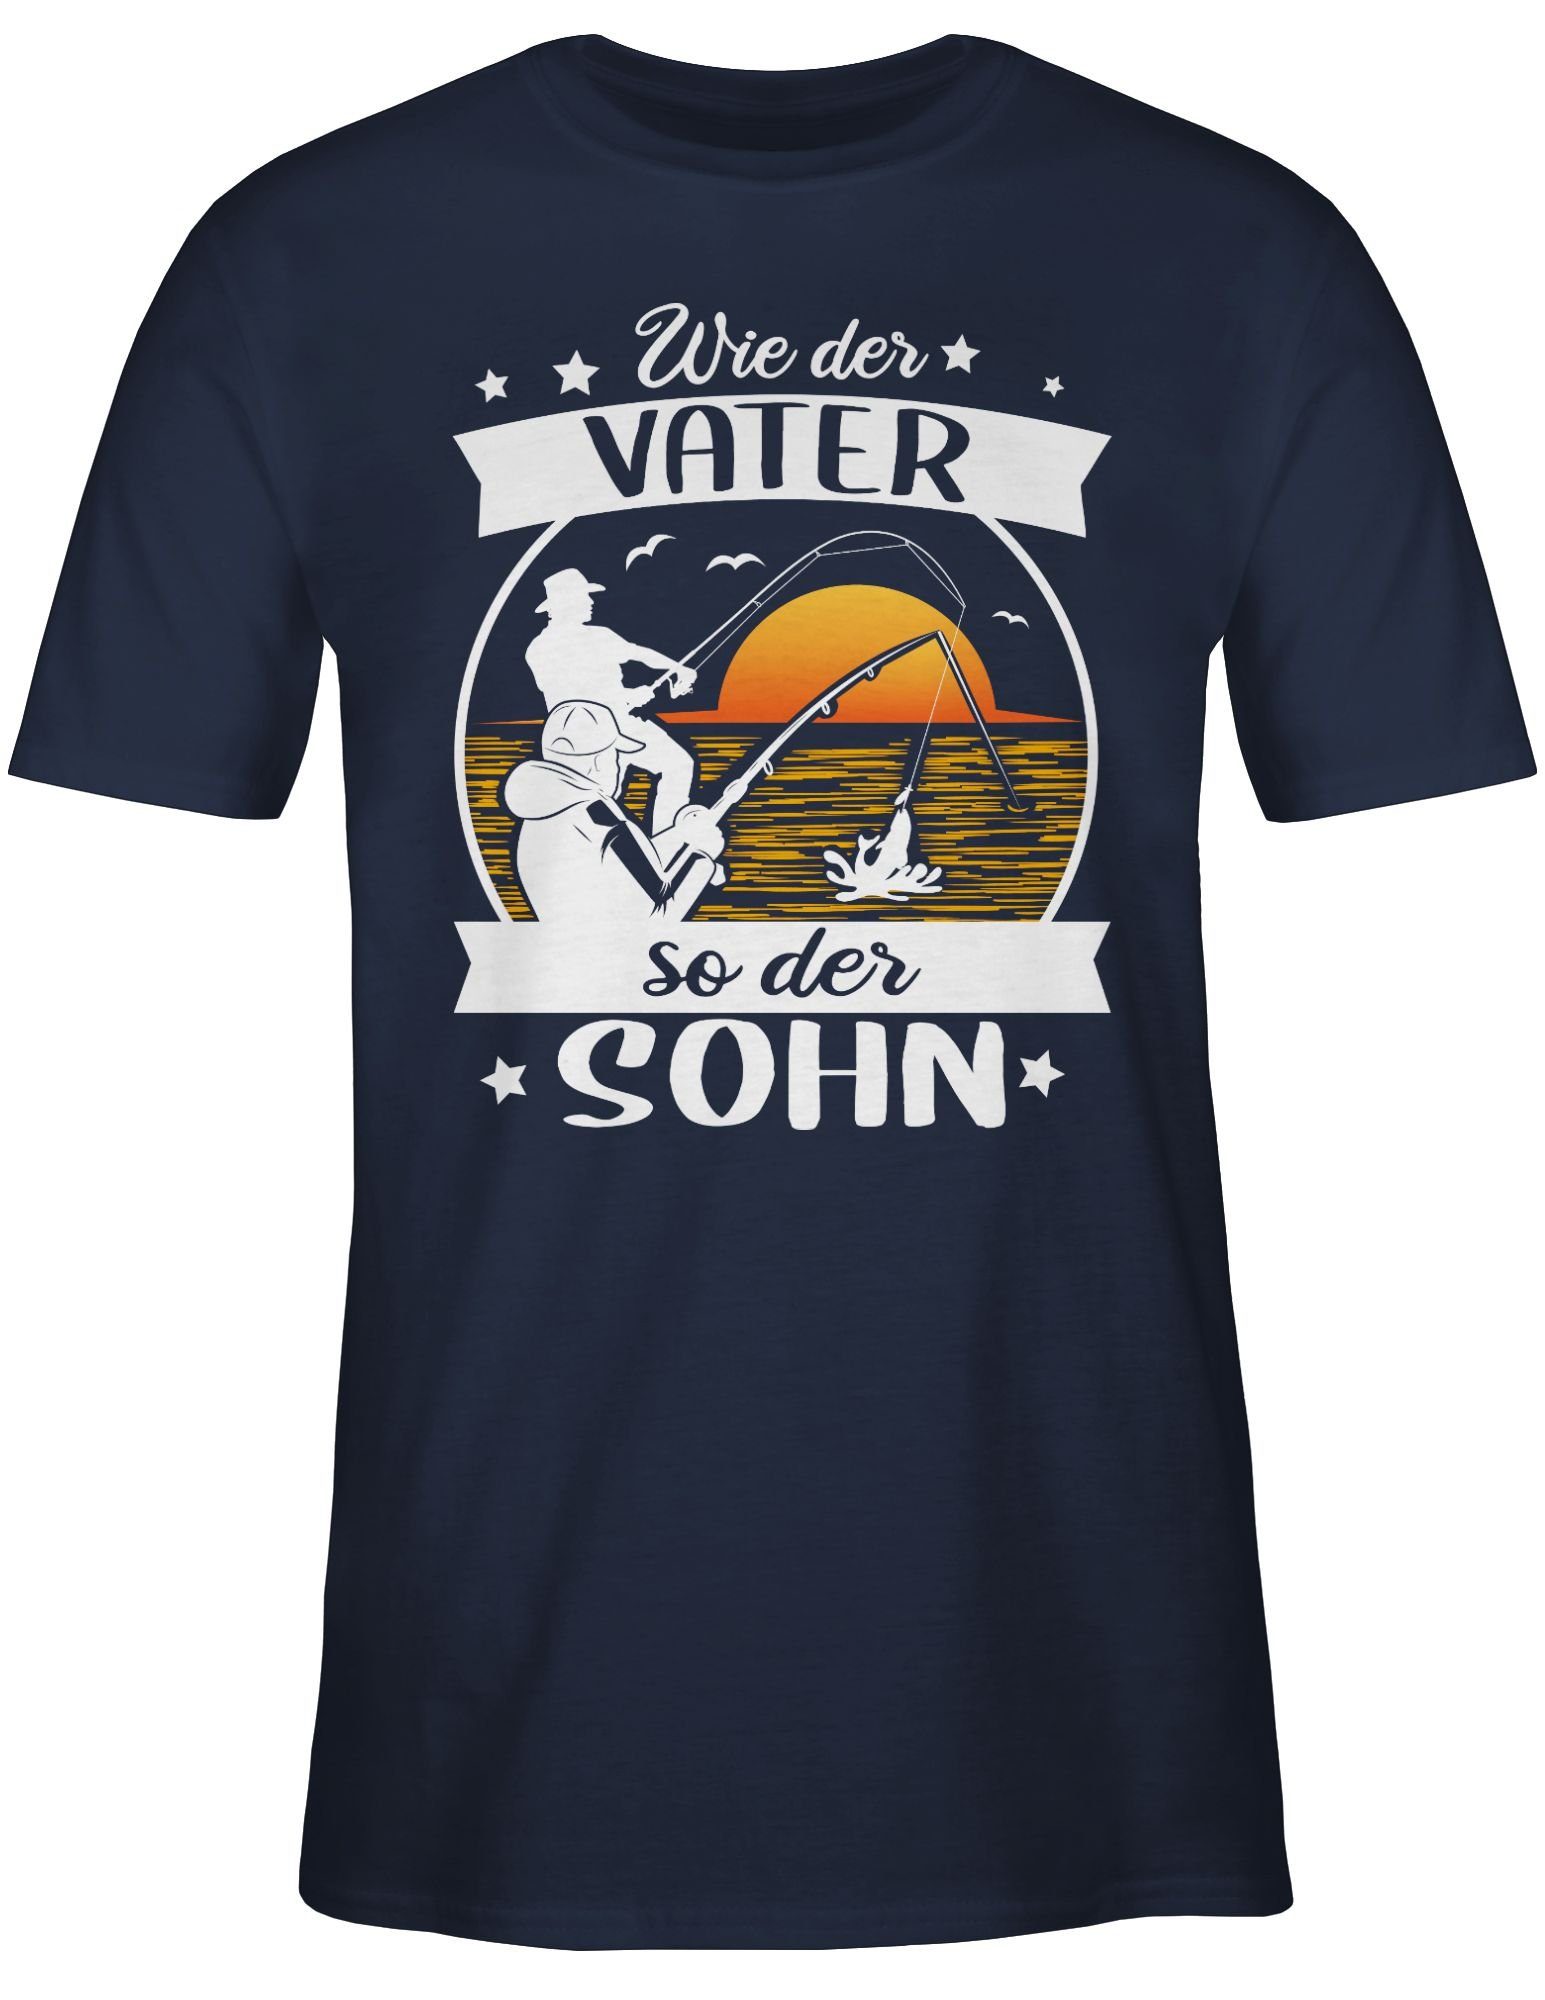 Shirtracer T-Shirt Wie der Vater der - 3 so Navy Blau Geschenke weiß/orange - Angeln Angler Sohn